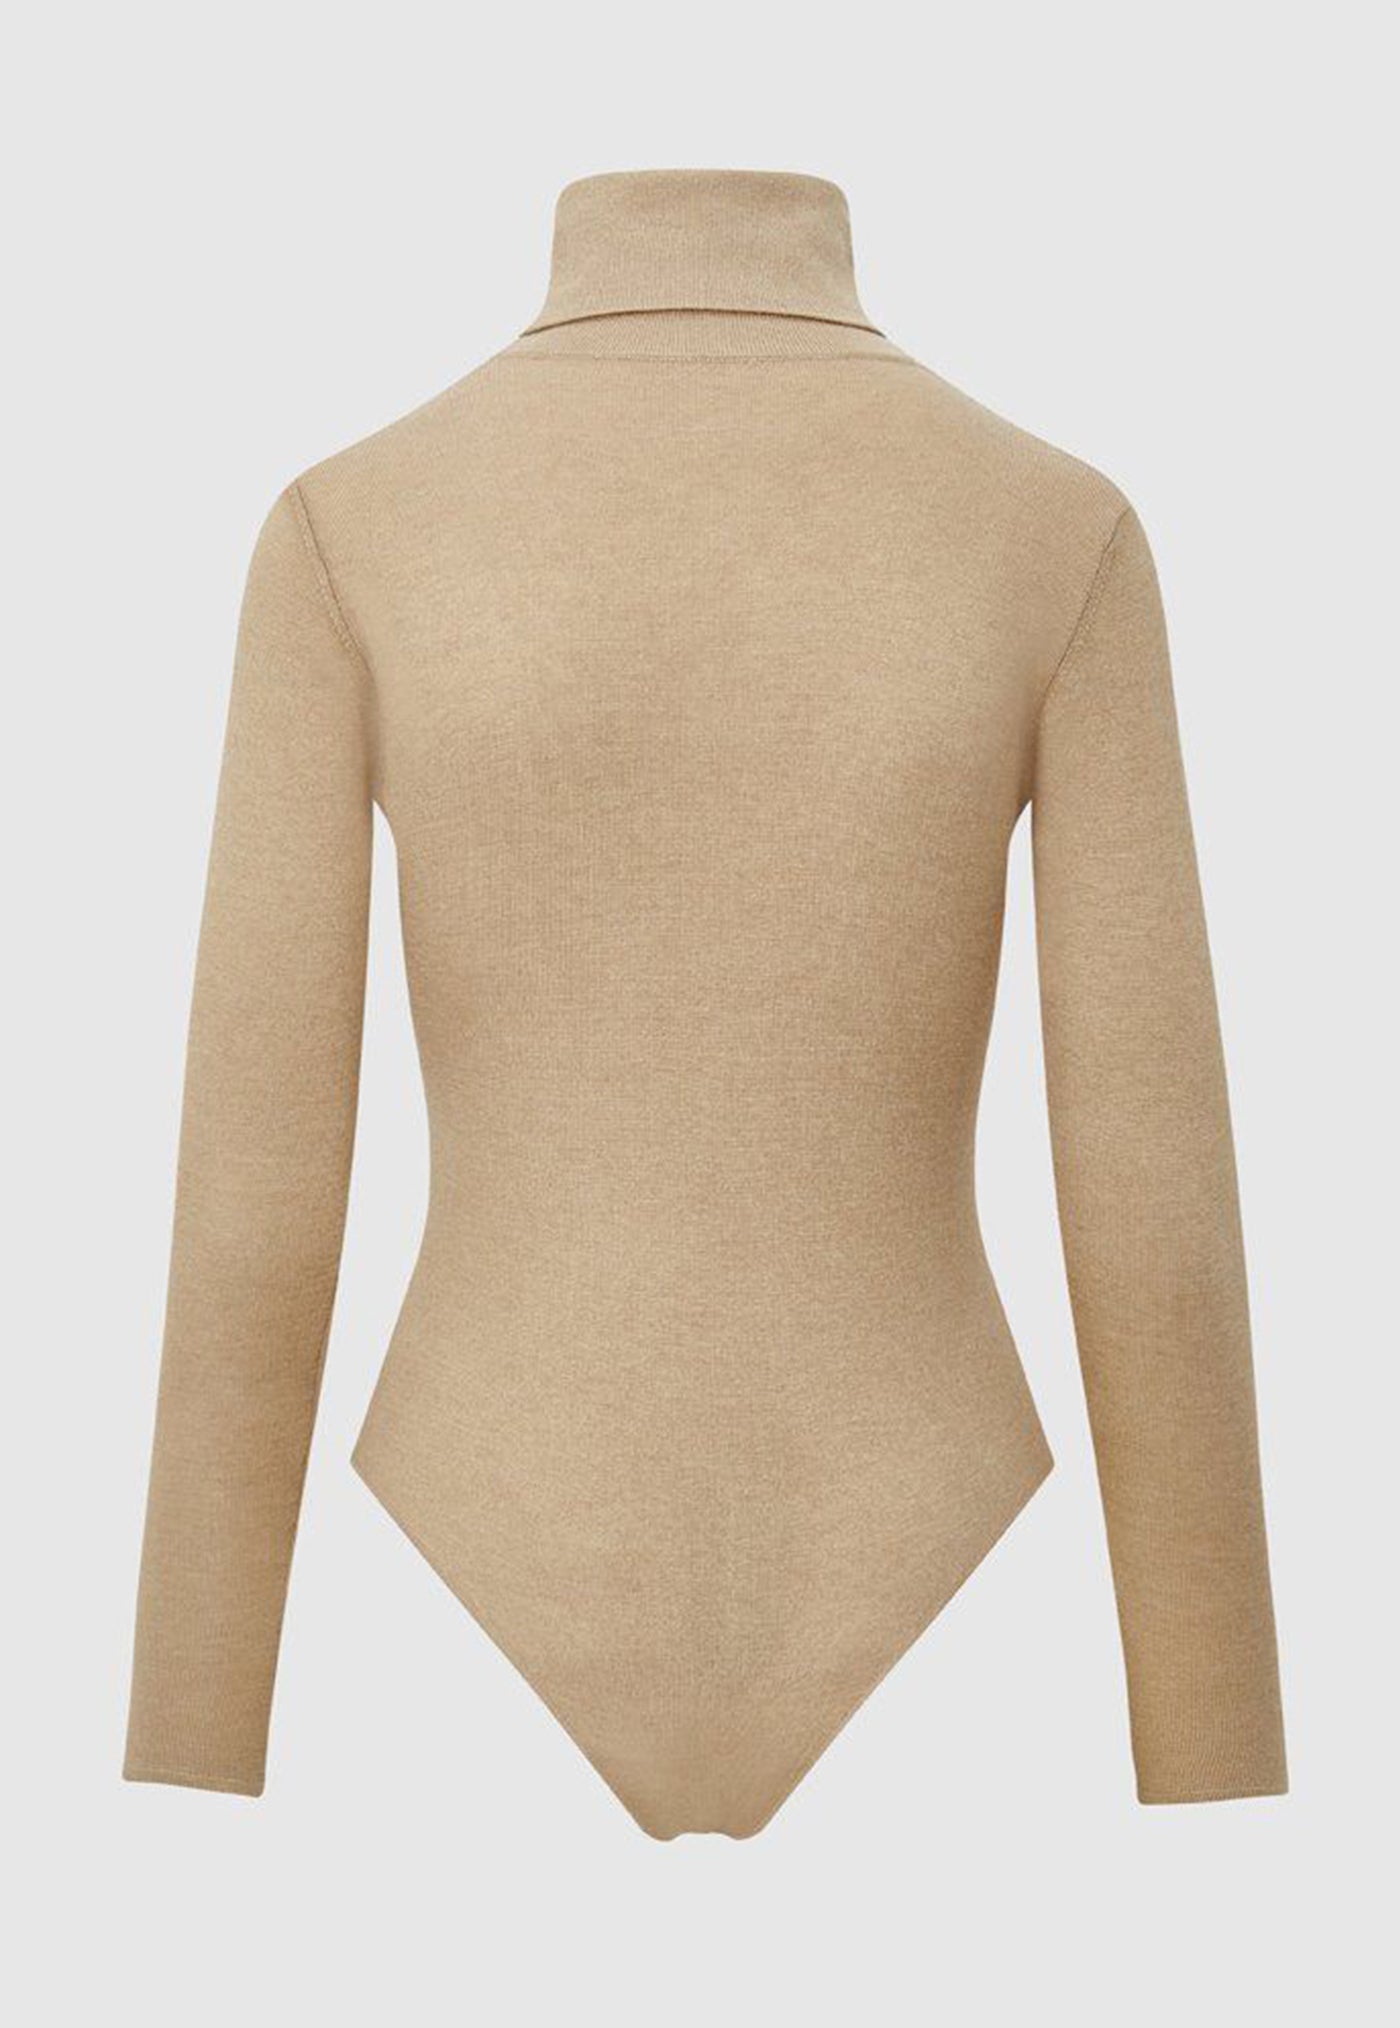 Silk Turtleneck Bodysuit - Camel sold by Angel Divine